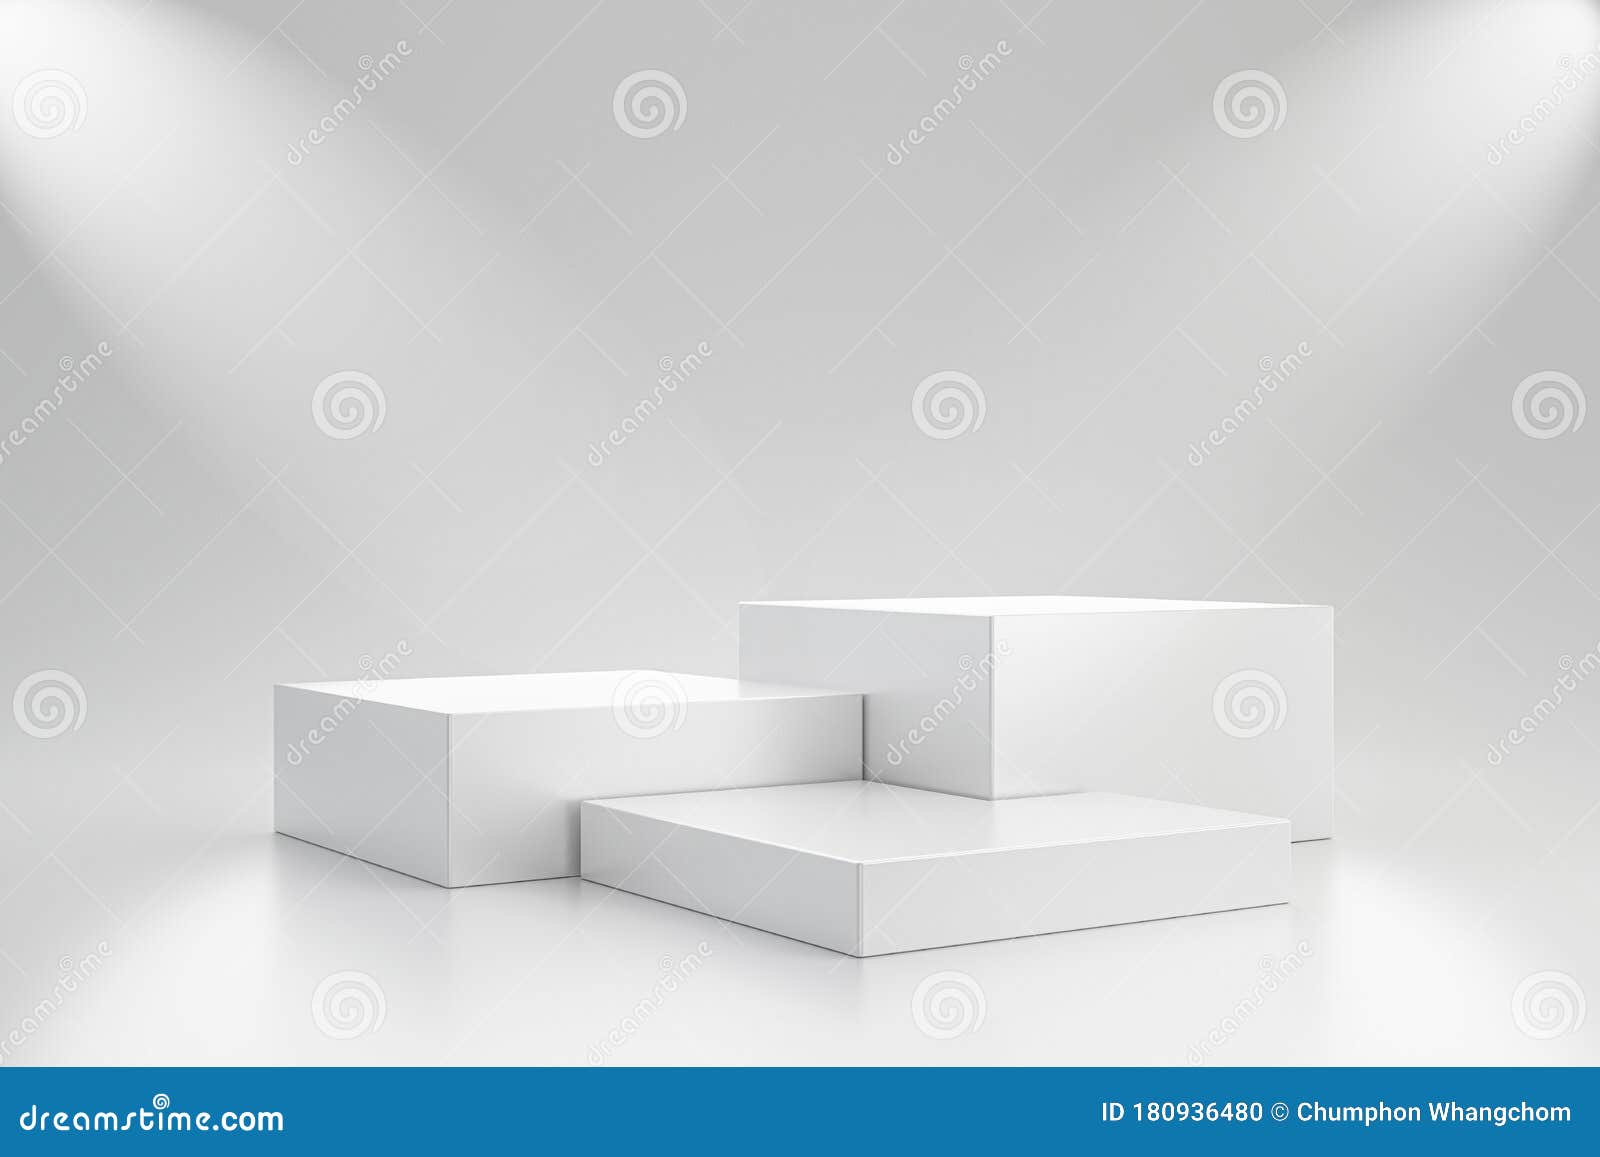 Modelo De Estúdio Branco E Pedestal De Cubo Em Fundo Simples Com Prateleira  De Produtos Spotlight. Estúdio Vazio Para Publicidade Ilustração Stock -  Ilustração de vitrine, backdrop: 180936480